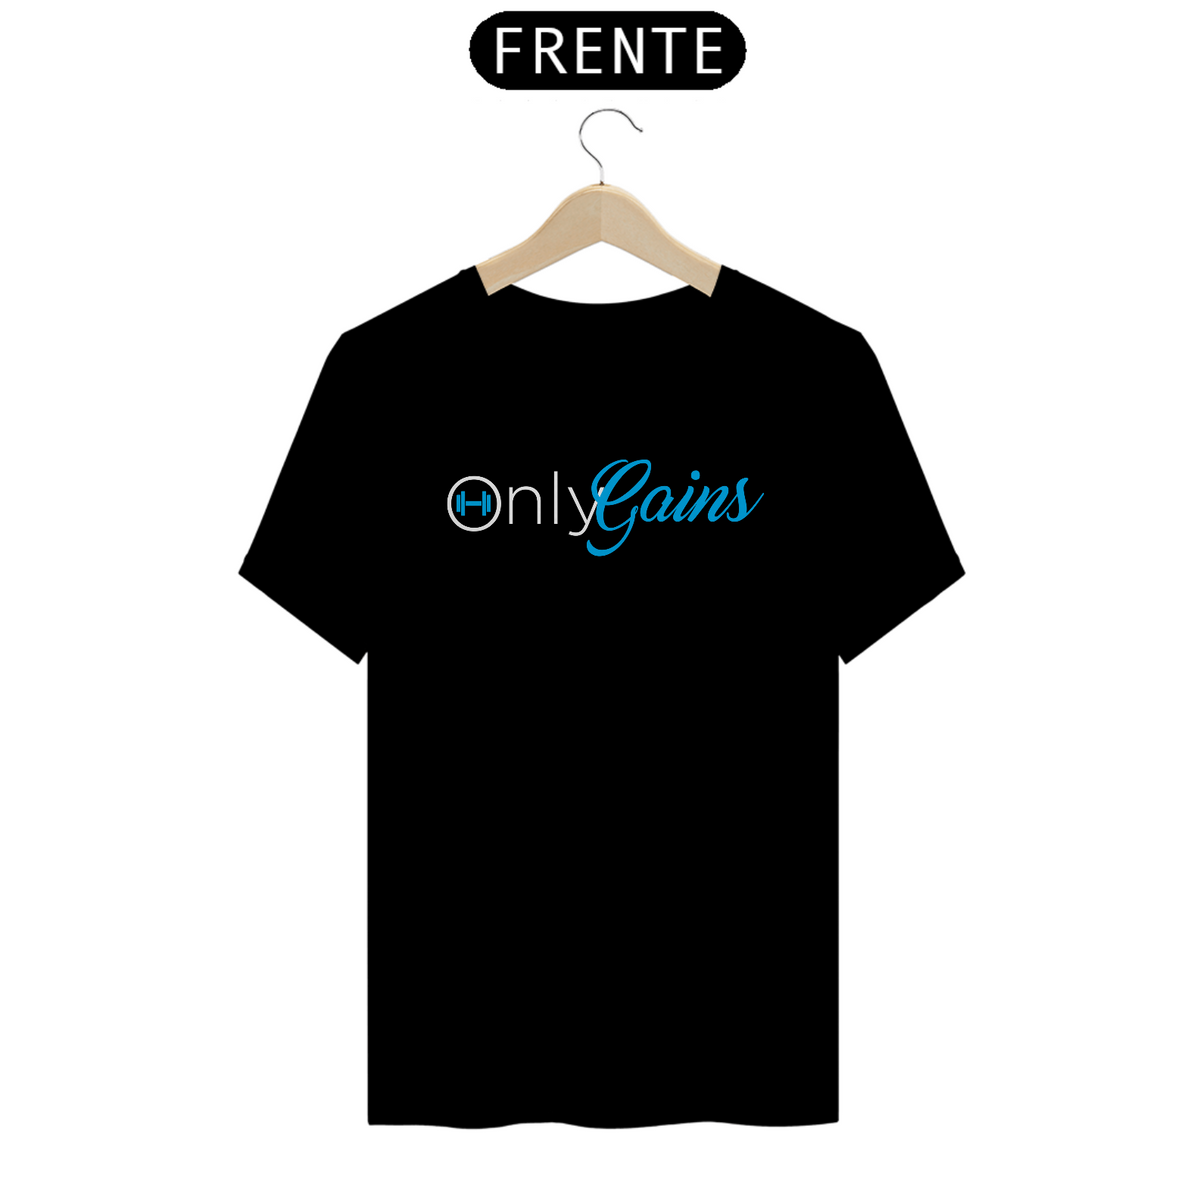 Nome do produto: Camiseta OnlyGains 